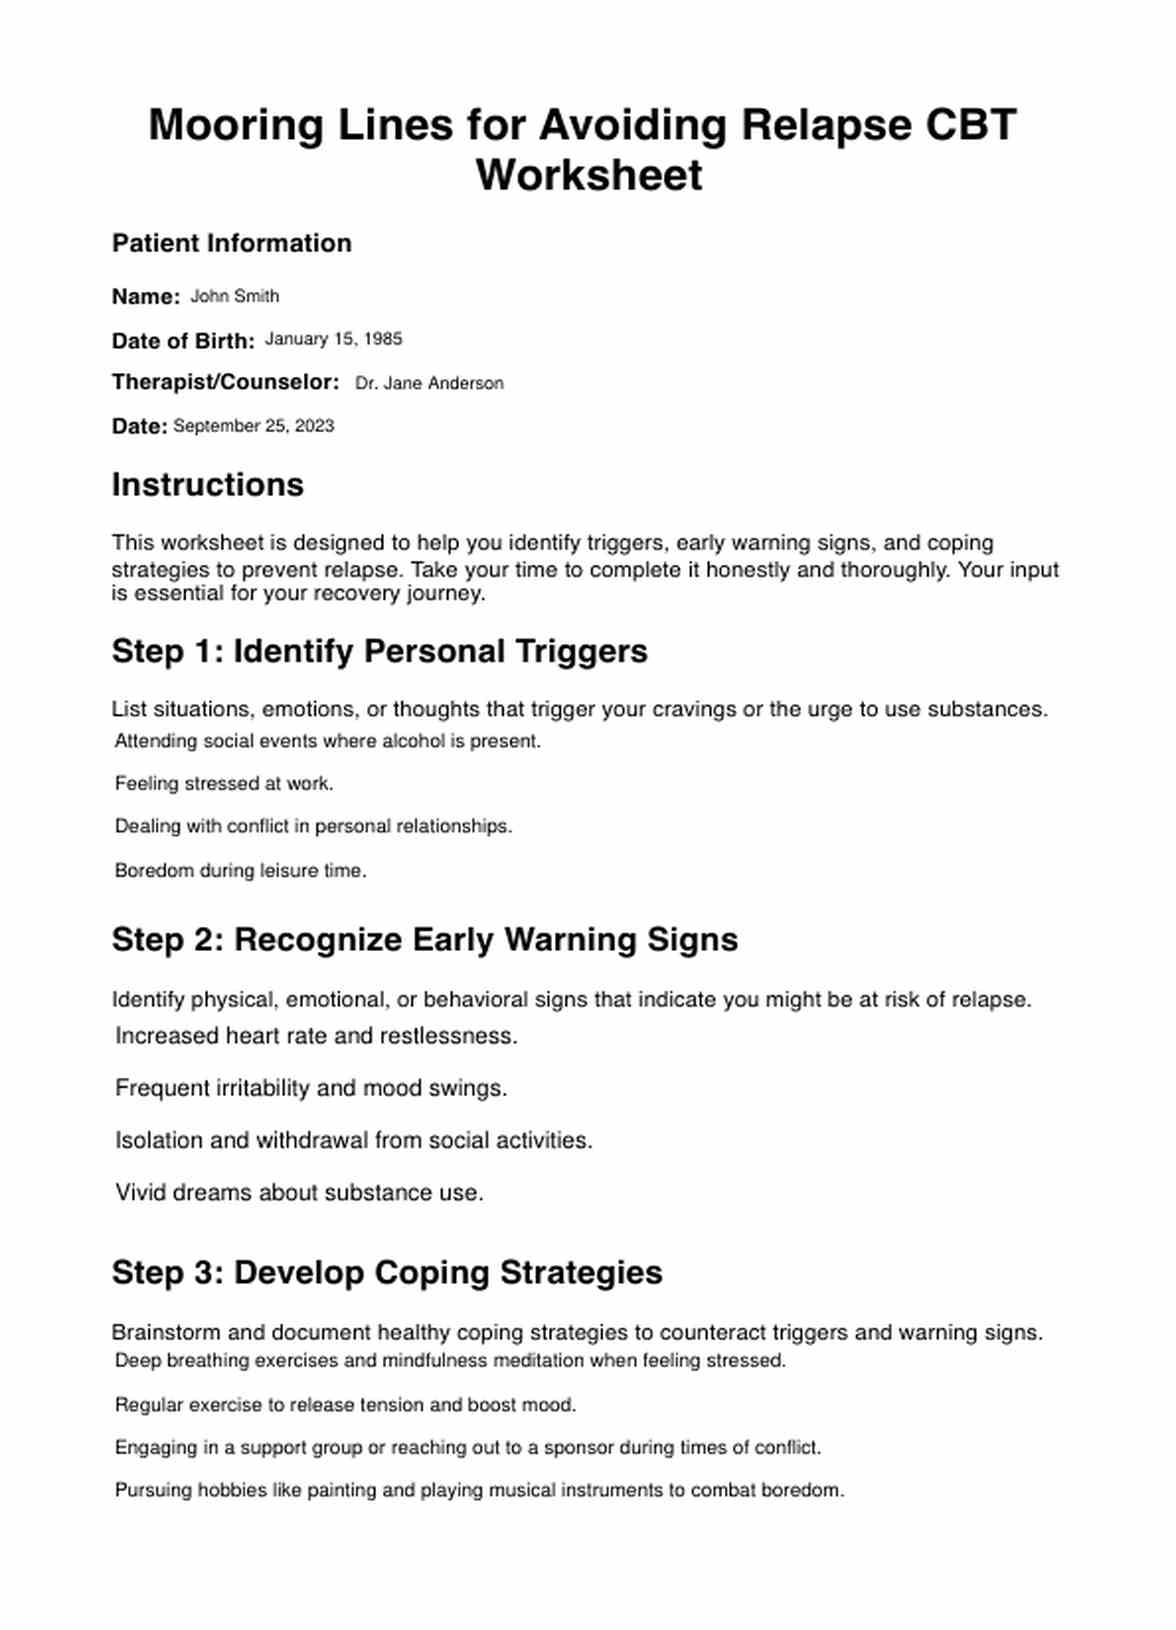 Mooring Lines for Avoiding Relapse CBT Worksheets PDF Example